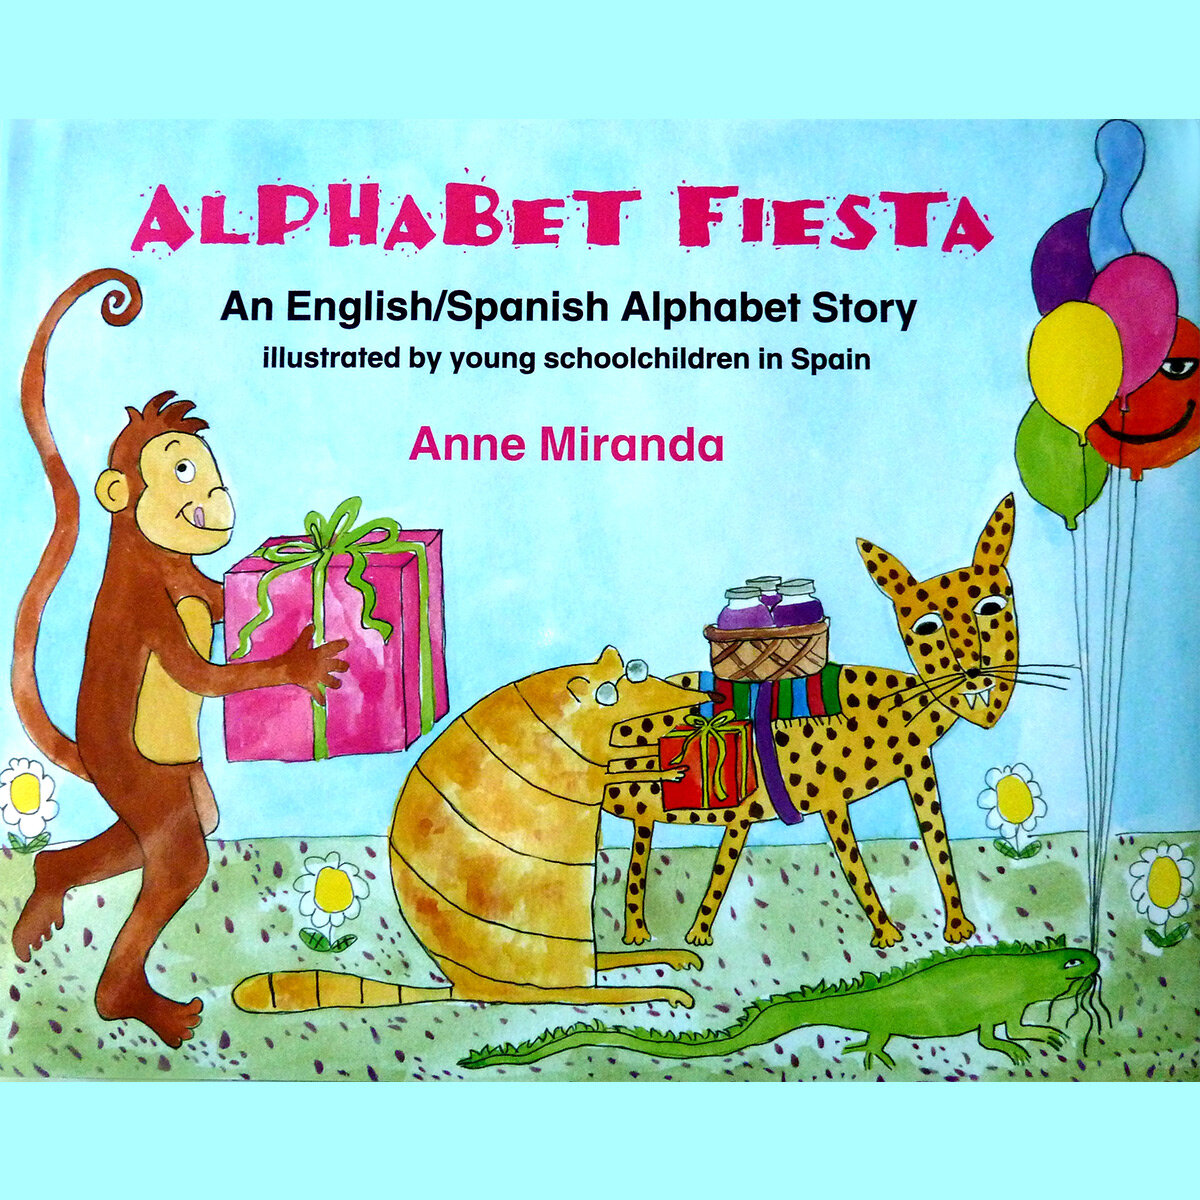 Alphabet Fiesta illustrated by school children in Spain